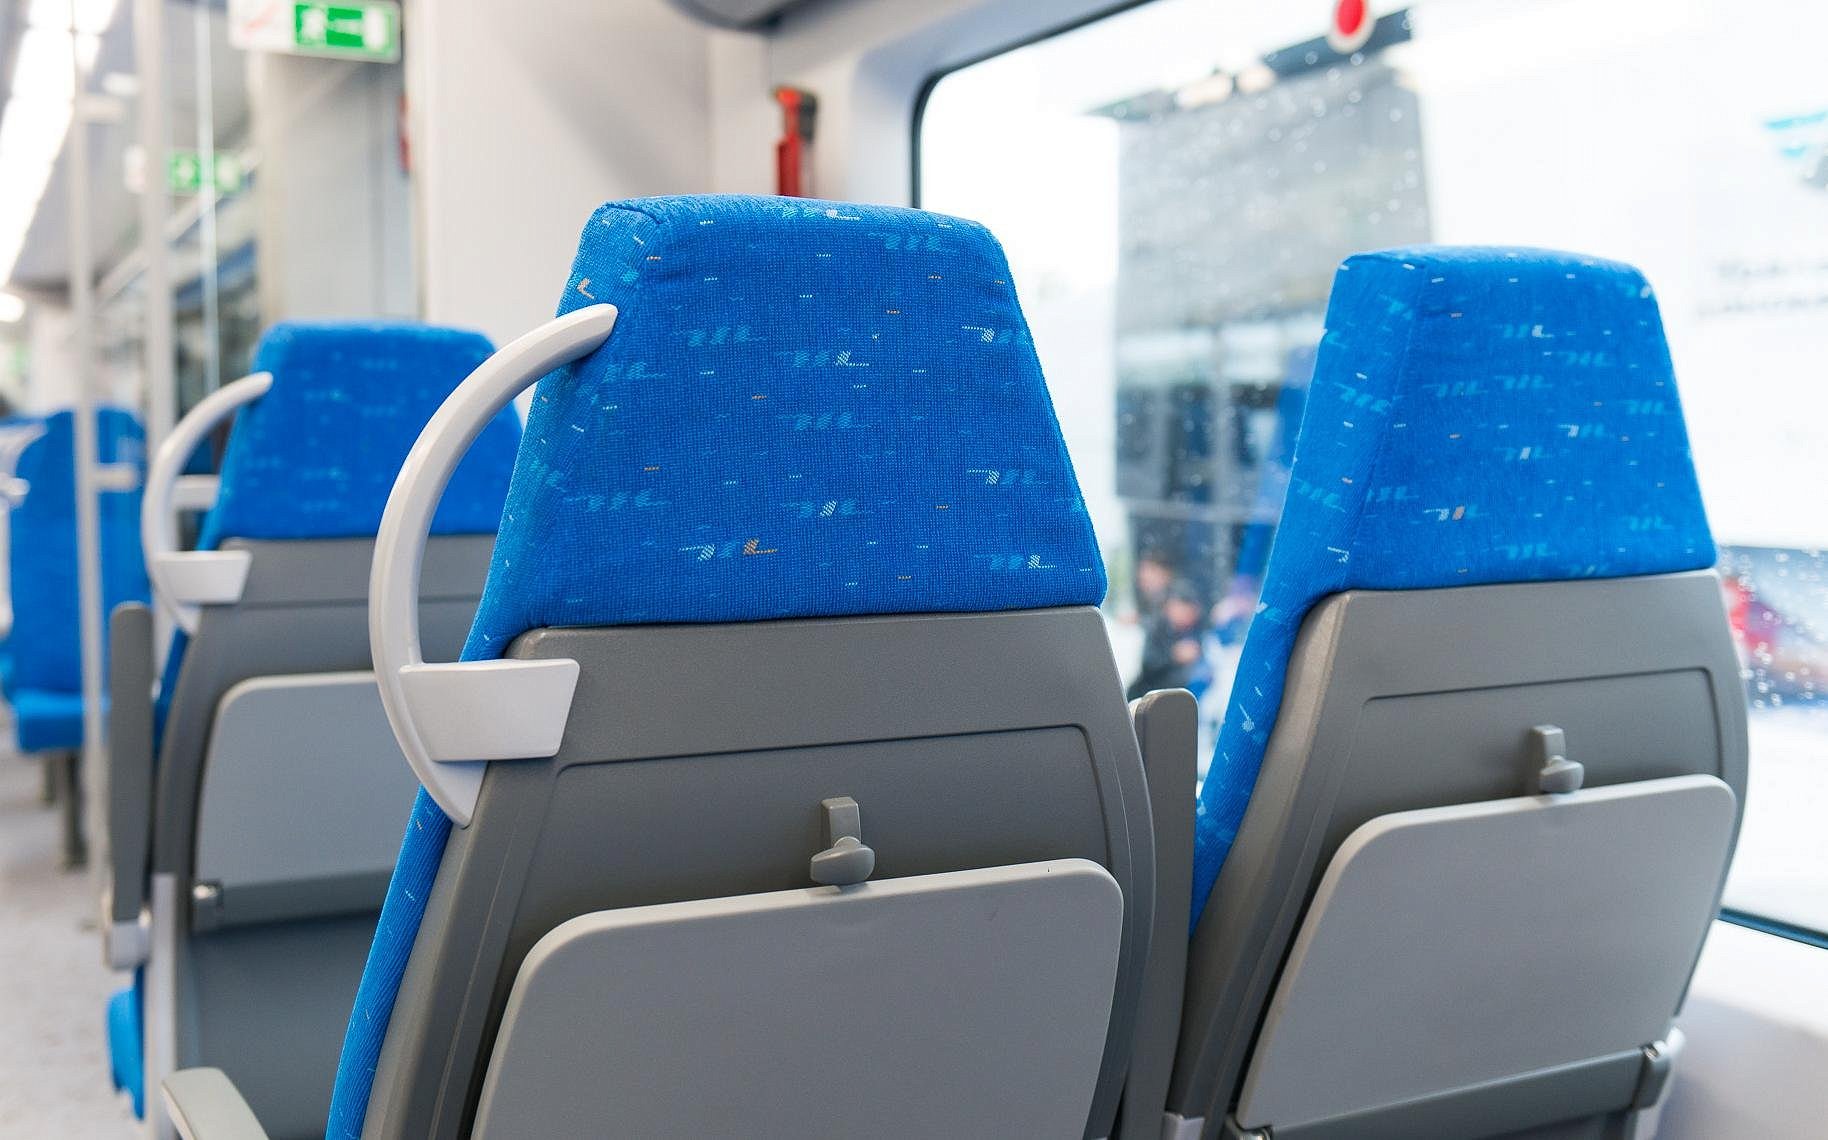 мягкие кресла для автобуса